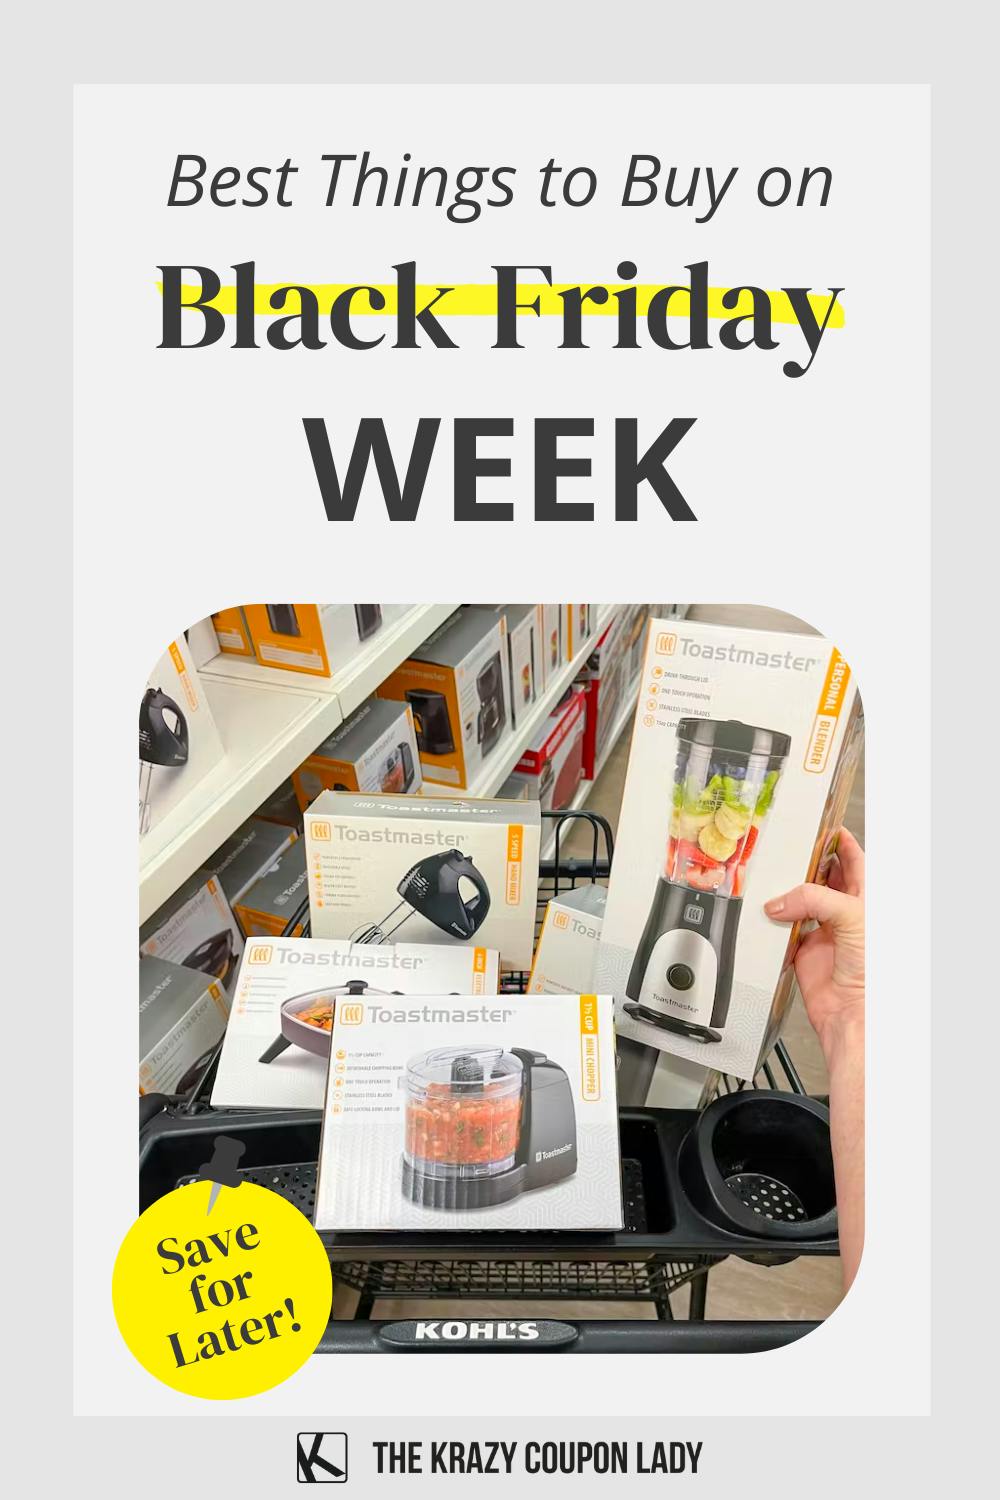 8 Best Things to Buy on Black Friday Week